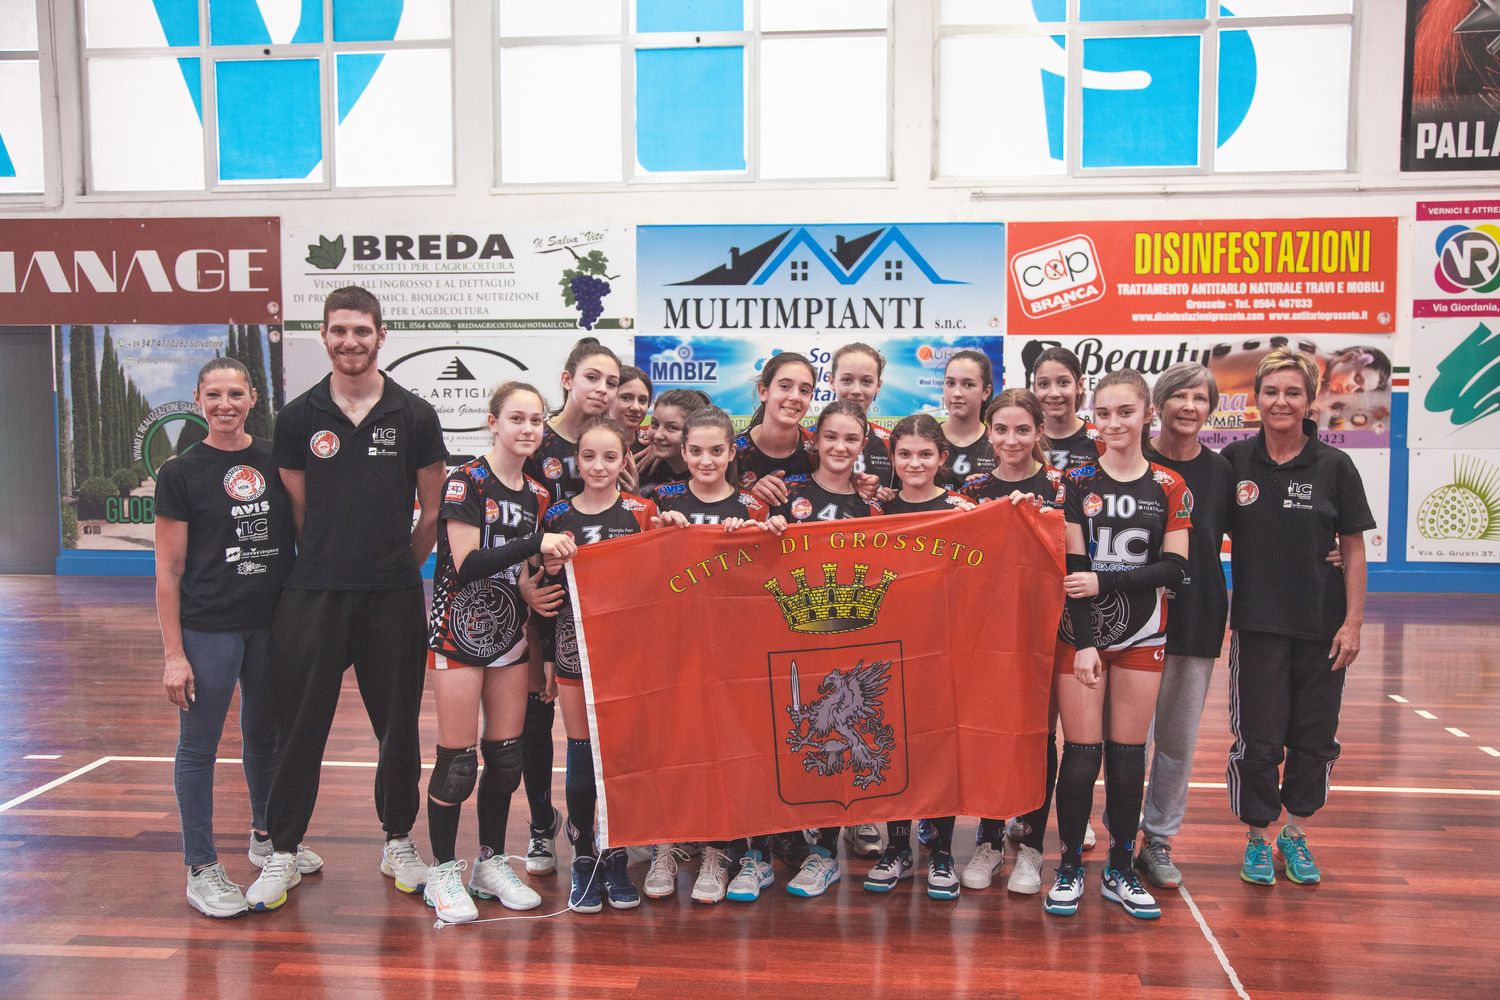 La Pallavolo Grosseto Luca Consani trionfa nel campionato territoriale under 13